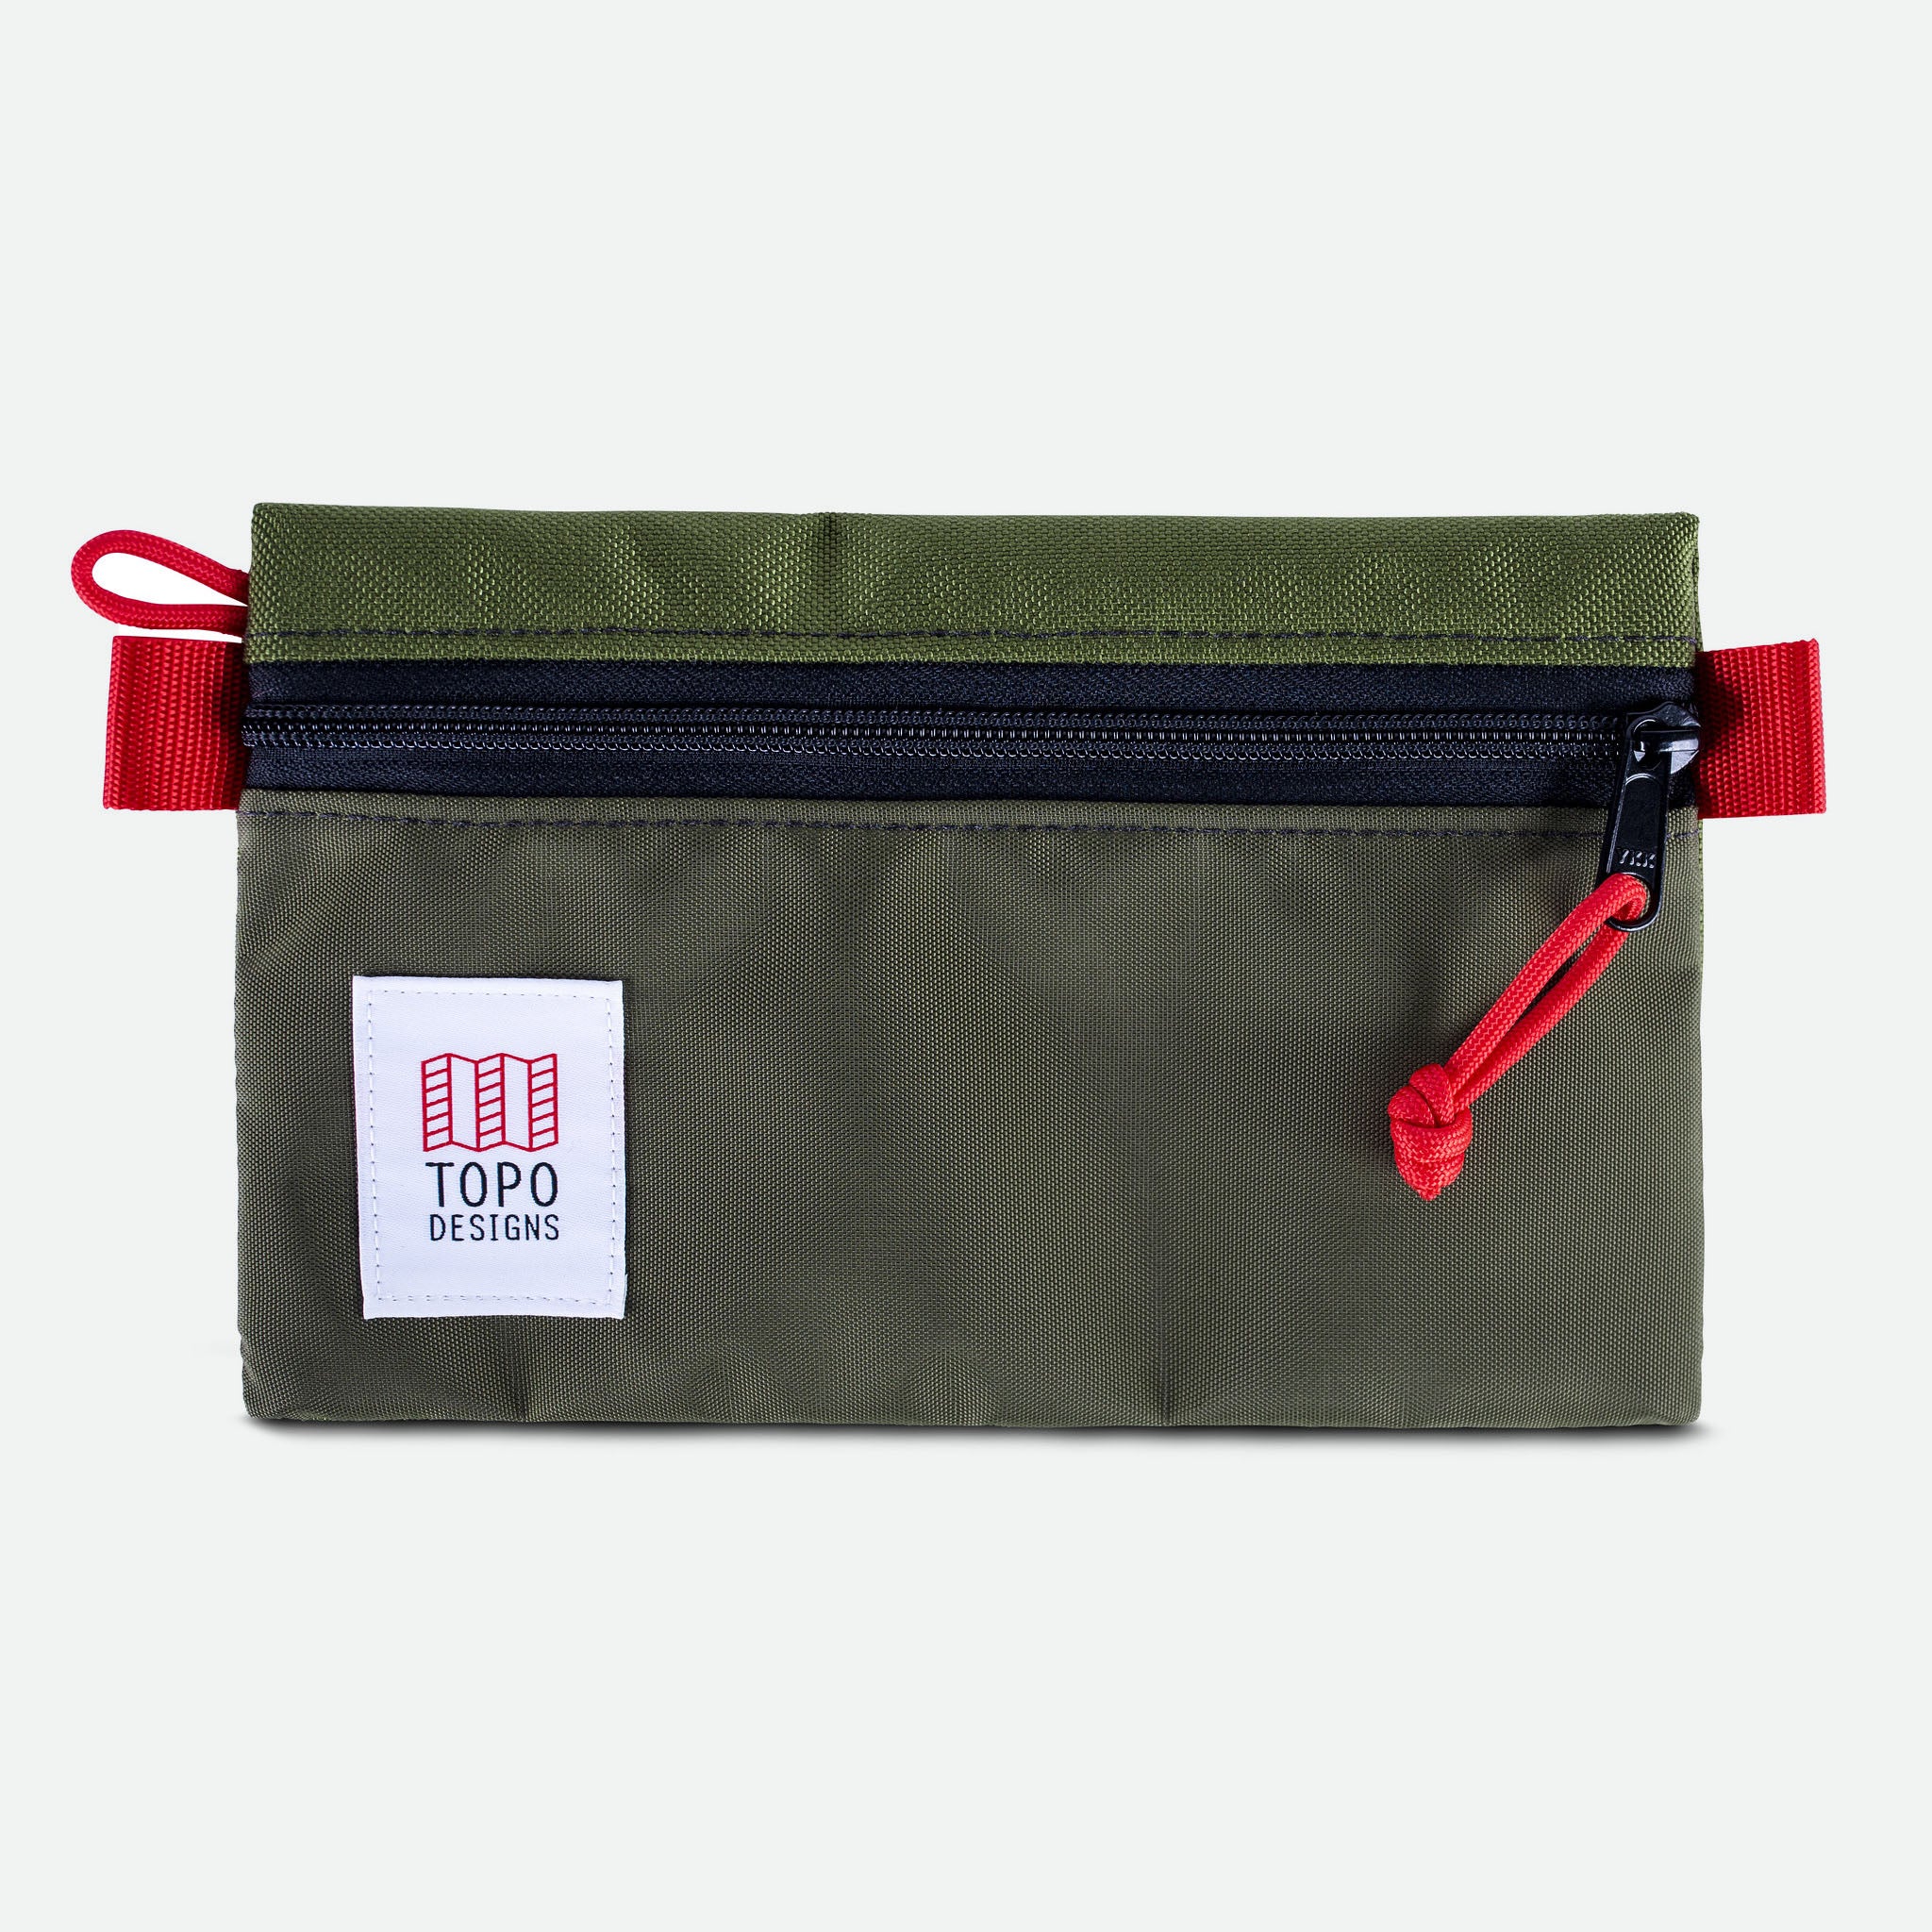 Topo Designs Accessory Bag Small Olive